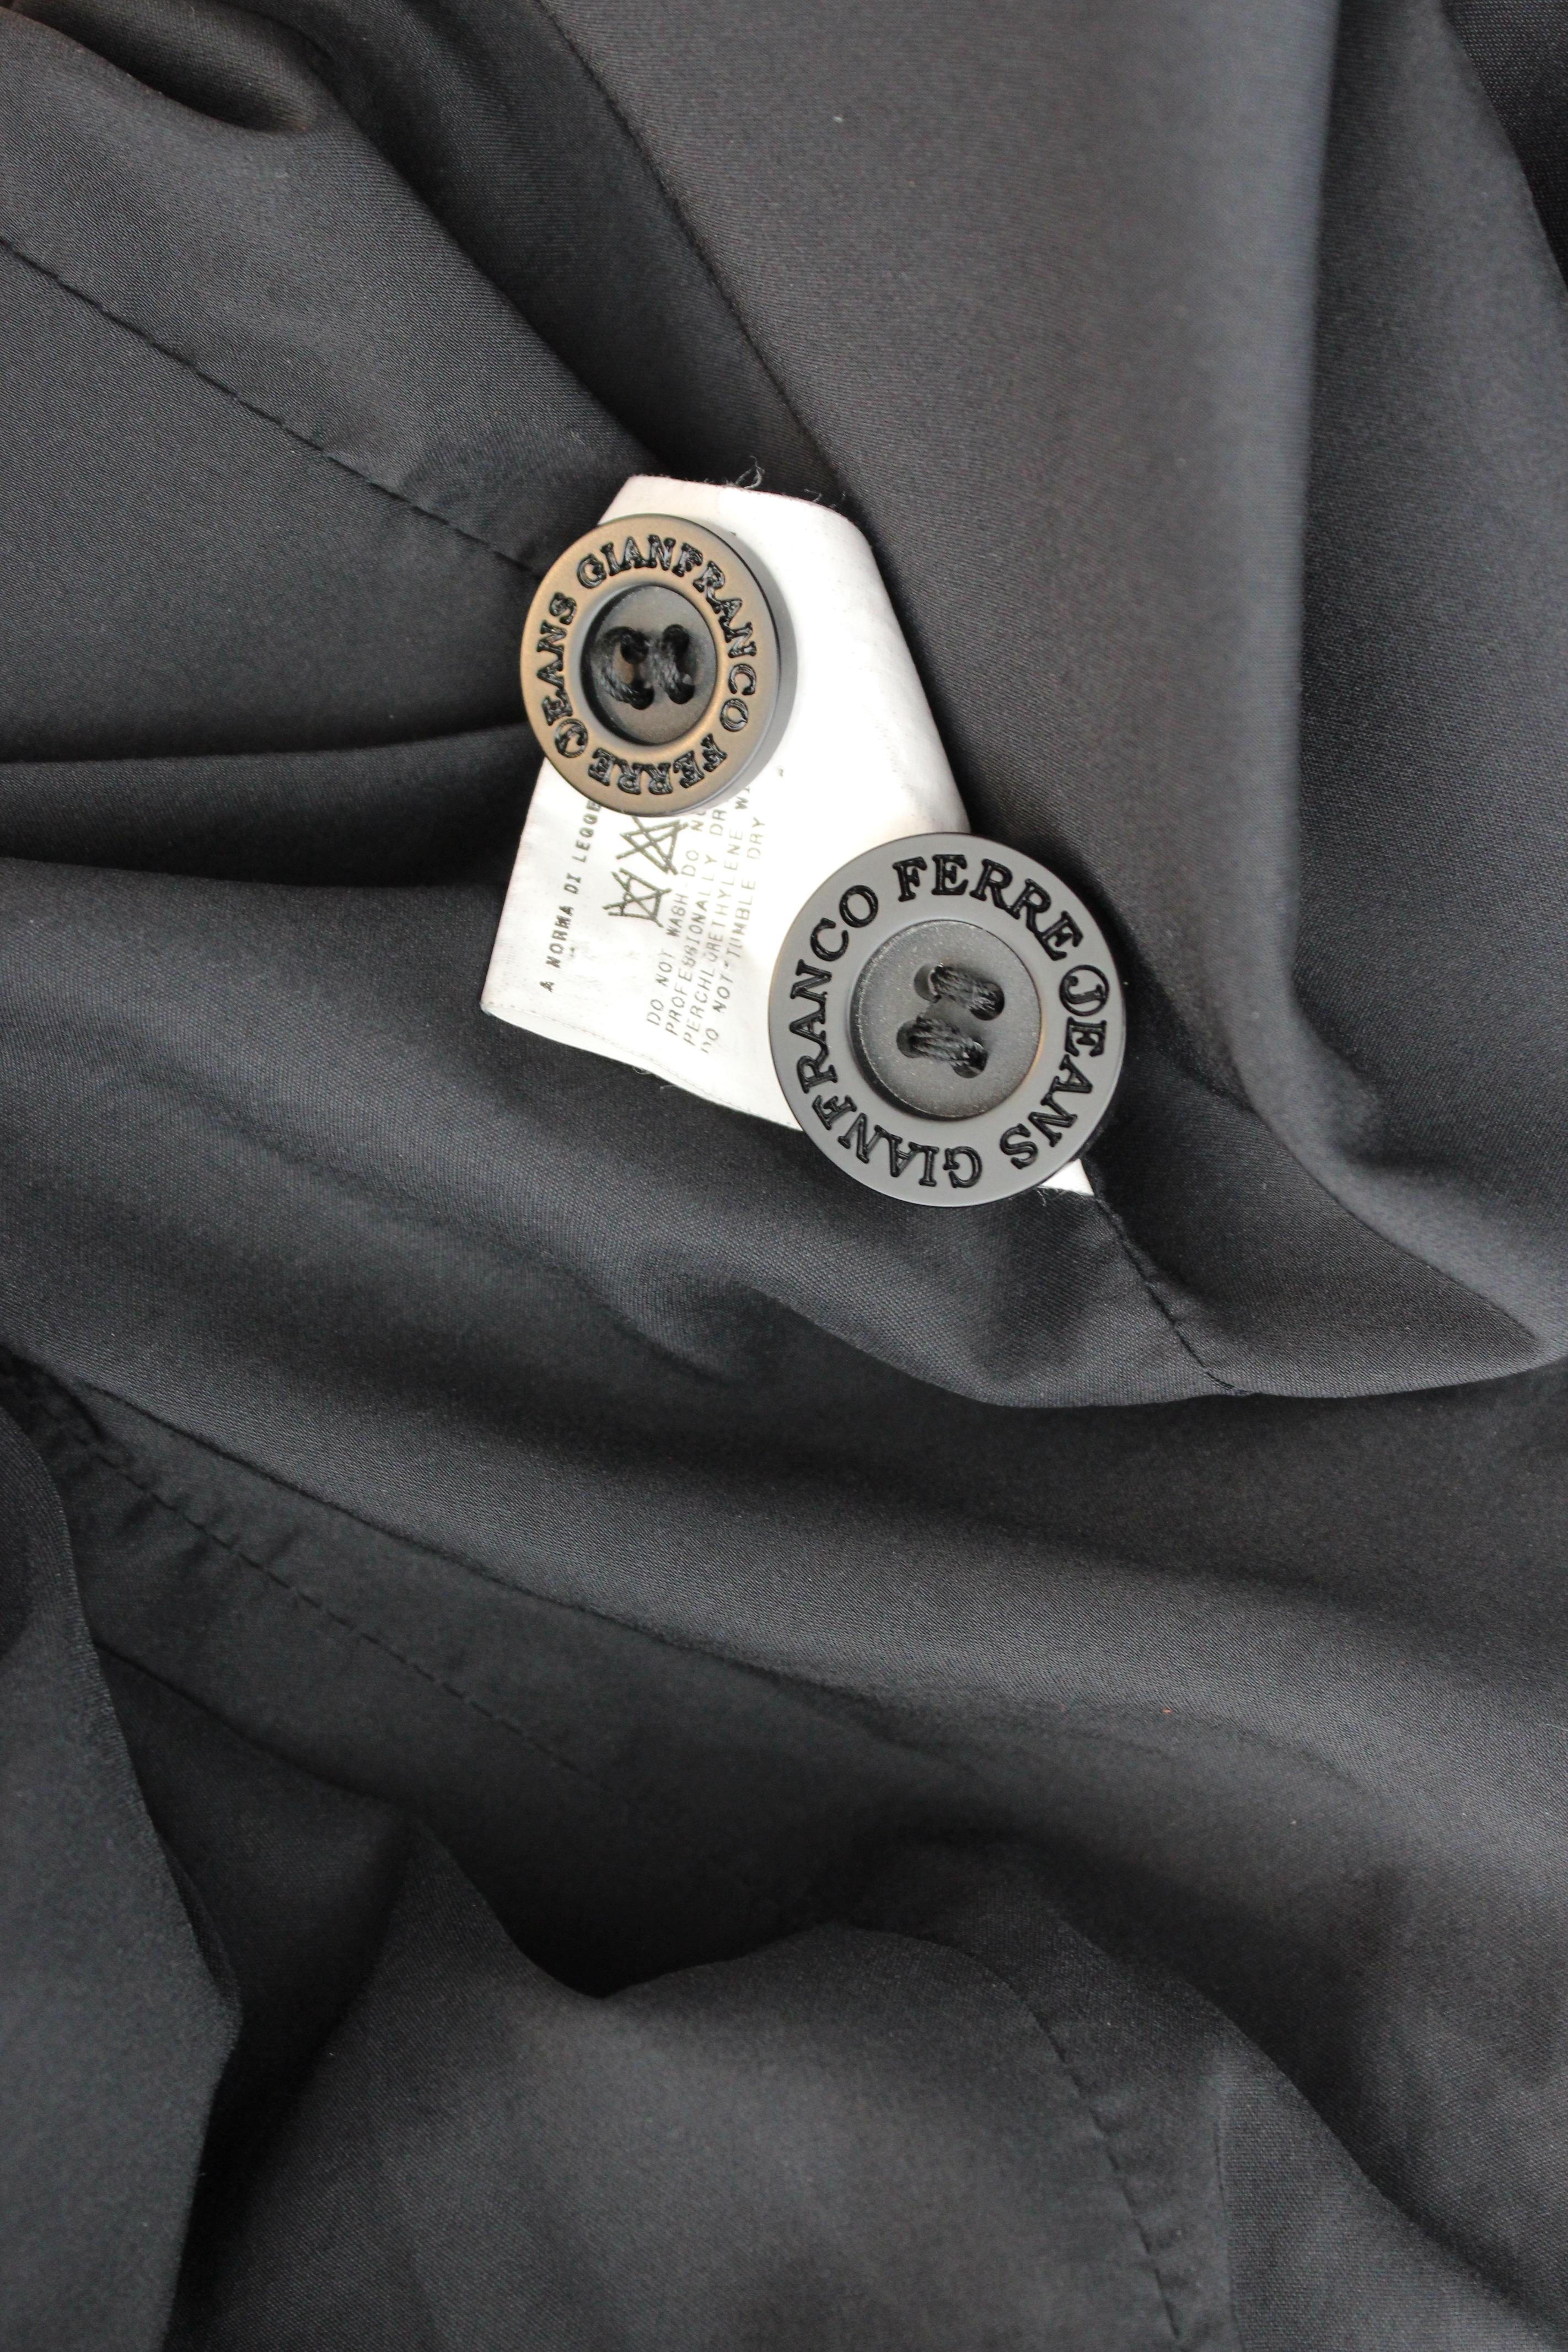 Veste pour femme Gianfranco Ferre Jeans vintage des années 2000. Veste cintrée, de couleur noire. Fermeture par boutons ton sur ton. tissu 92% polyamide, 8% élasthanne, aspect jean. Fabriquées en Italie.

Condition : Excellent

Article utilisé